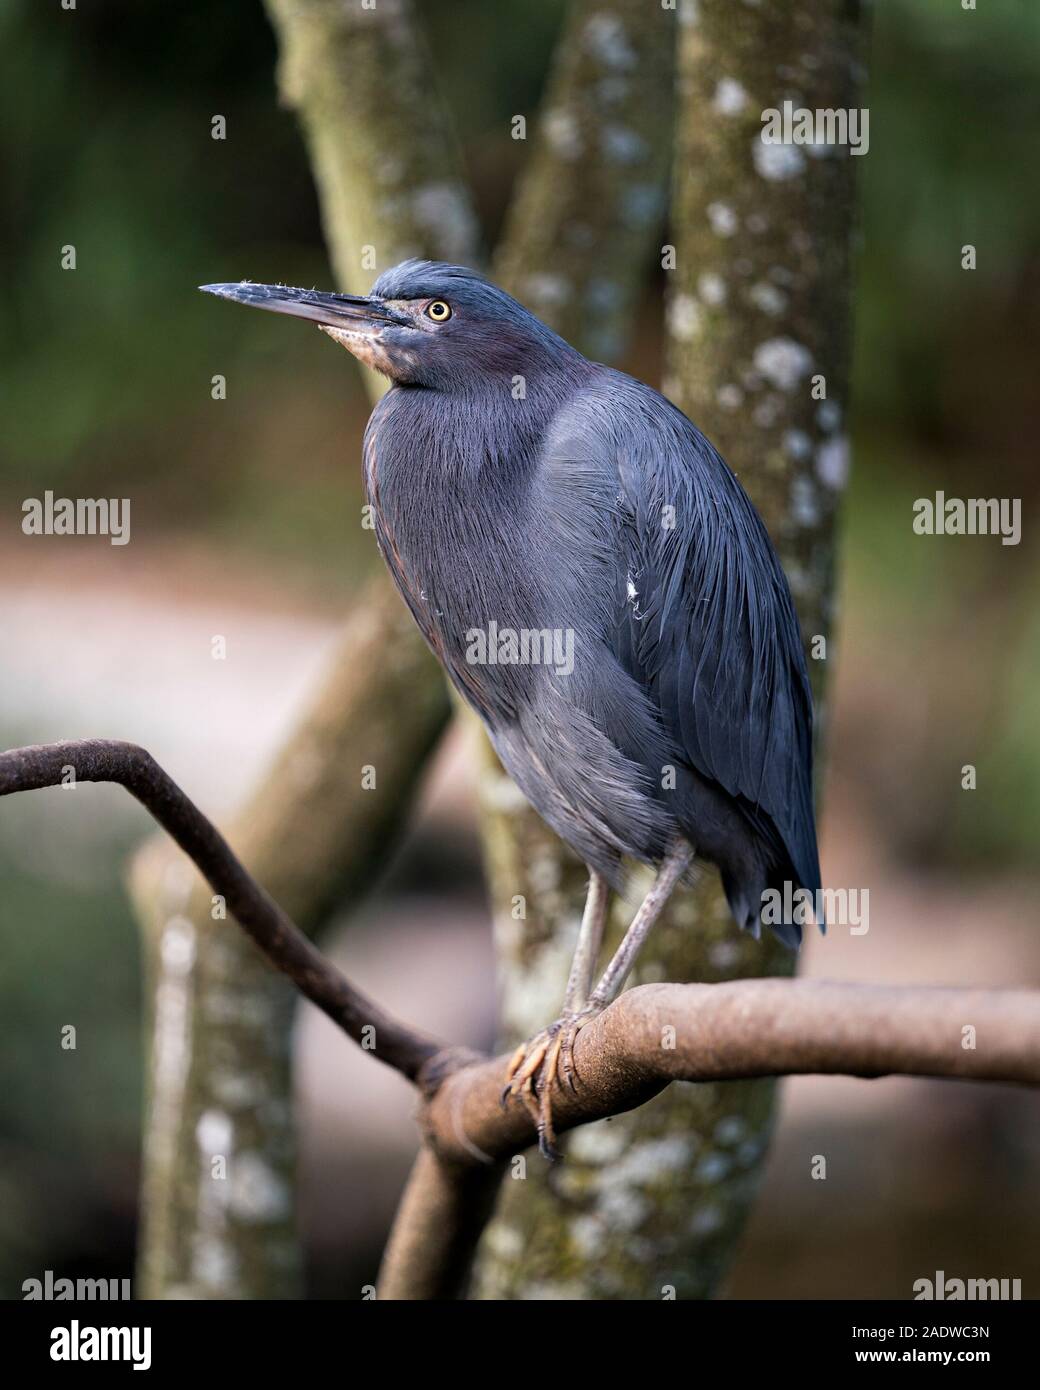 Kleine blaue Vogel in der Nähe Profil ansehen mit einem Bokeh Hintergrund thront auf einem Zweig seine Körper, Kopf, Augen, Schnabel, die Füße seiner Umgebung Stockfoto